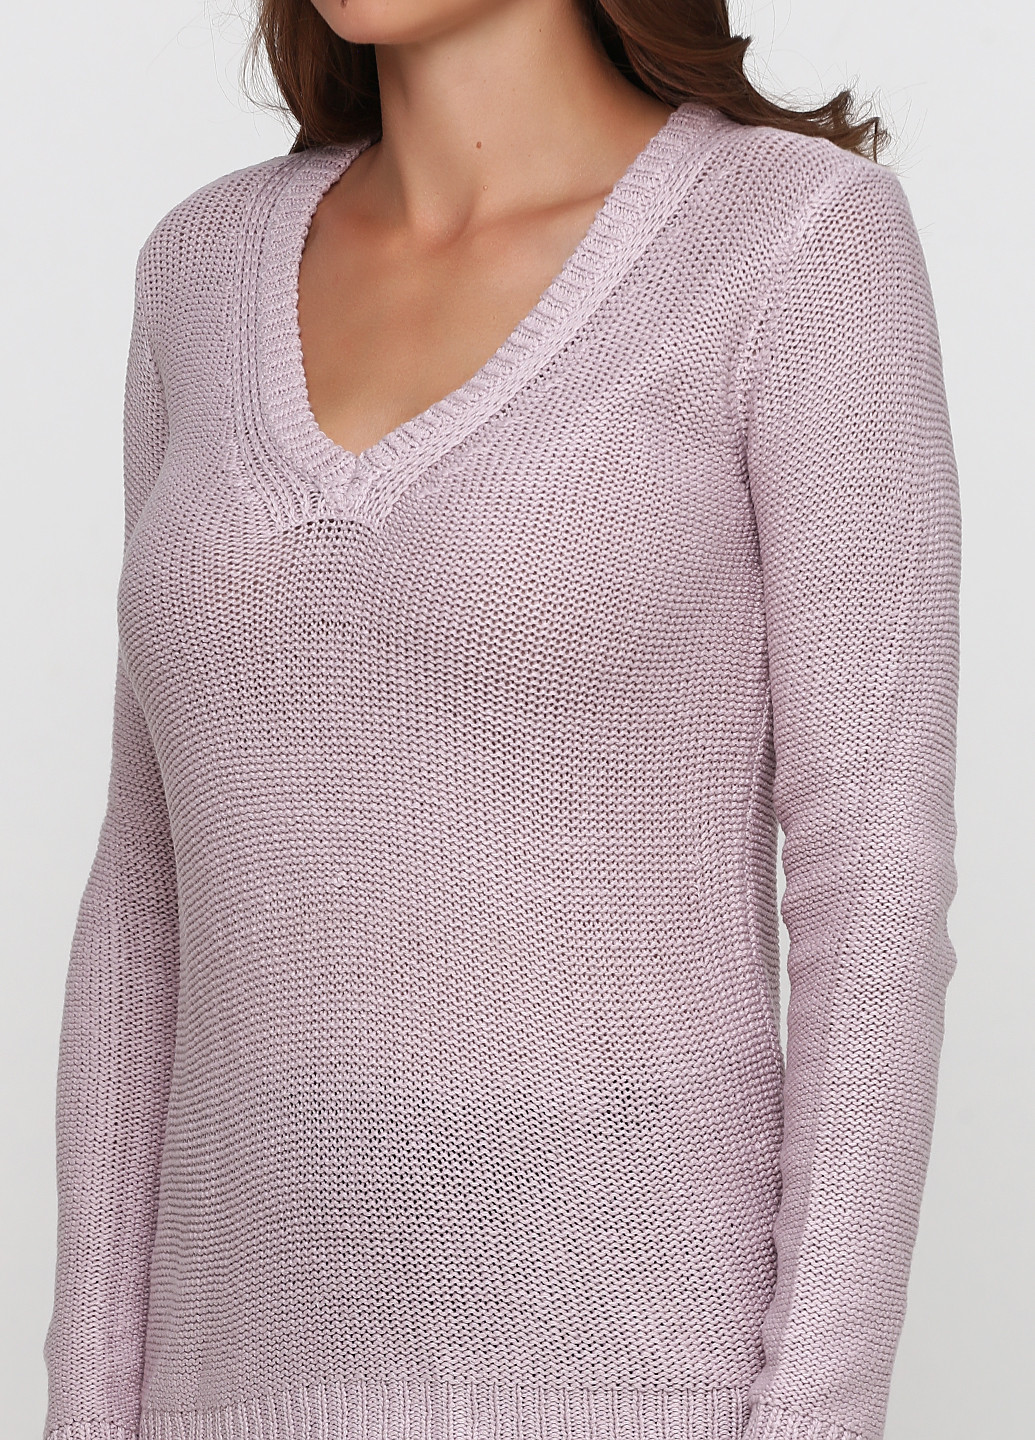 Розово-лиловый демисезонный пуловер пуловер Best Mountain